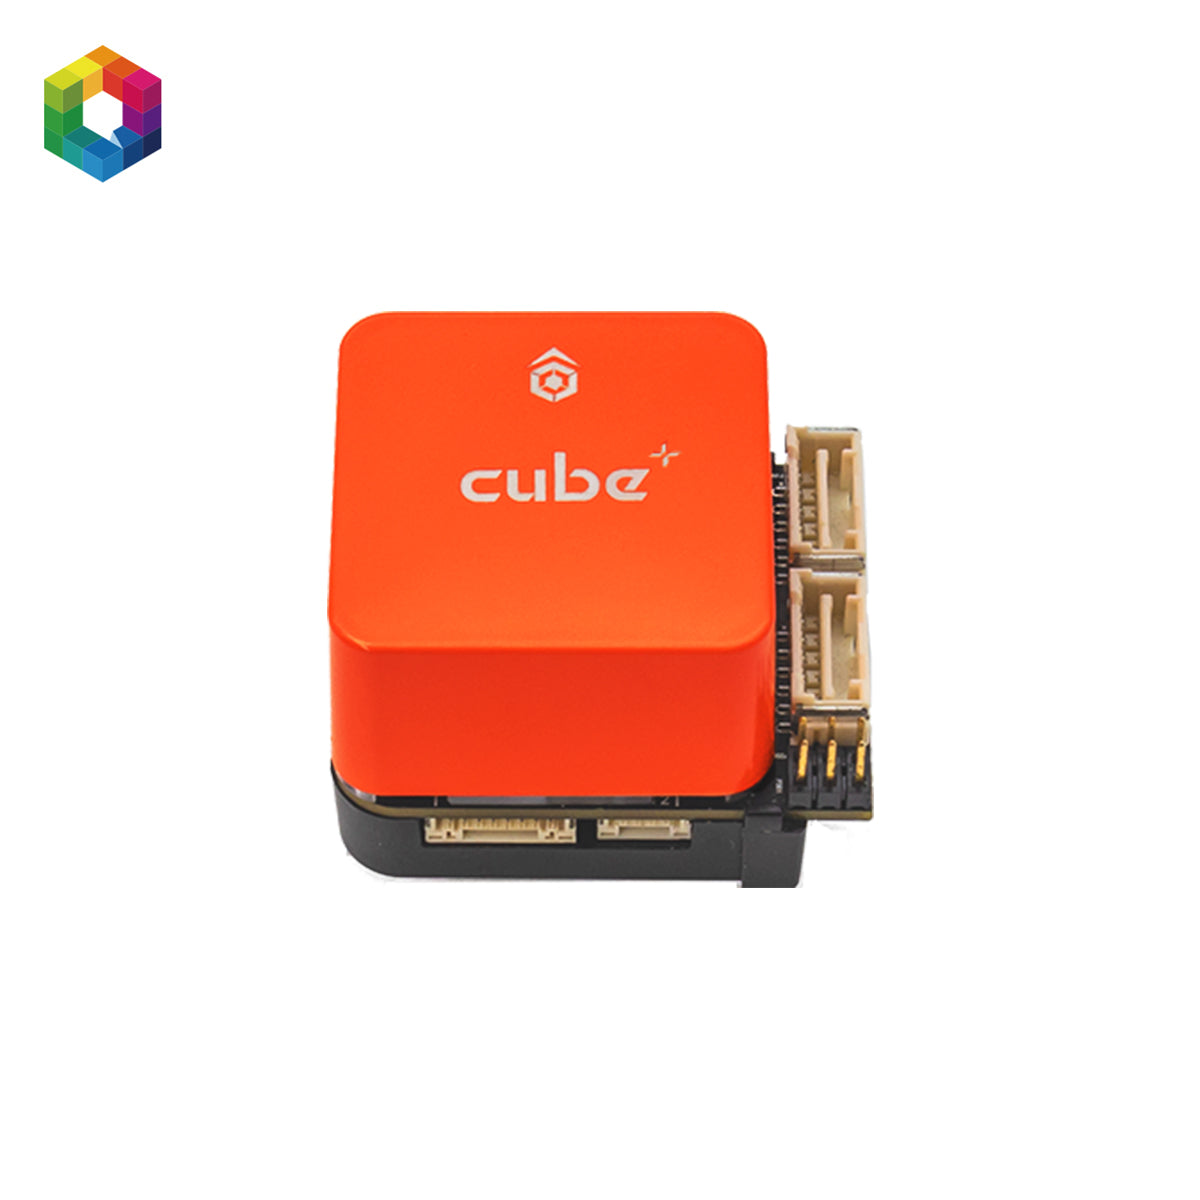 The Cube Orange+ Mini Set